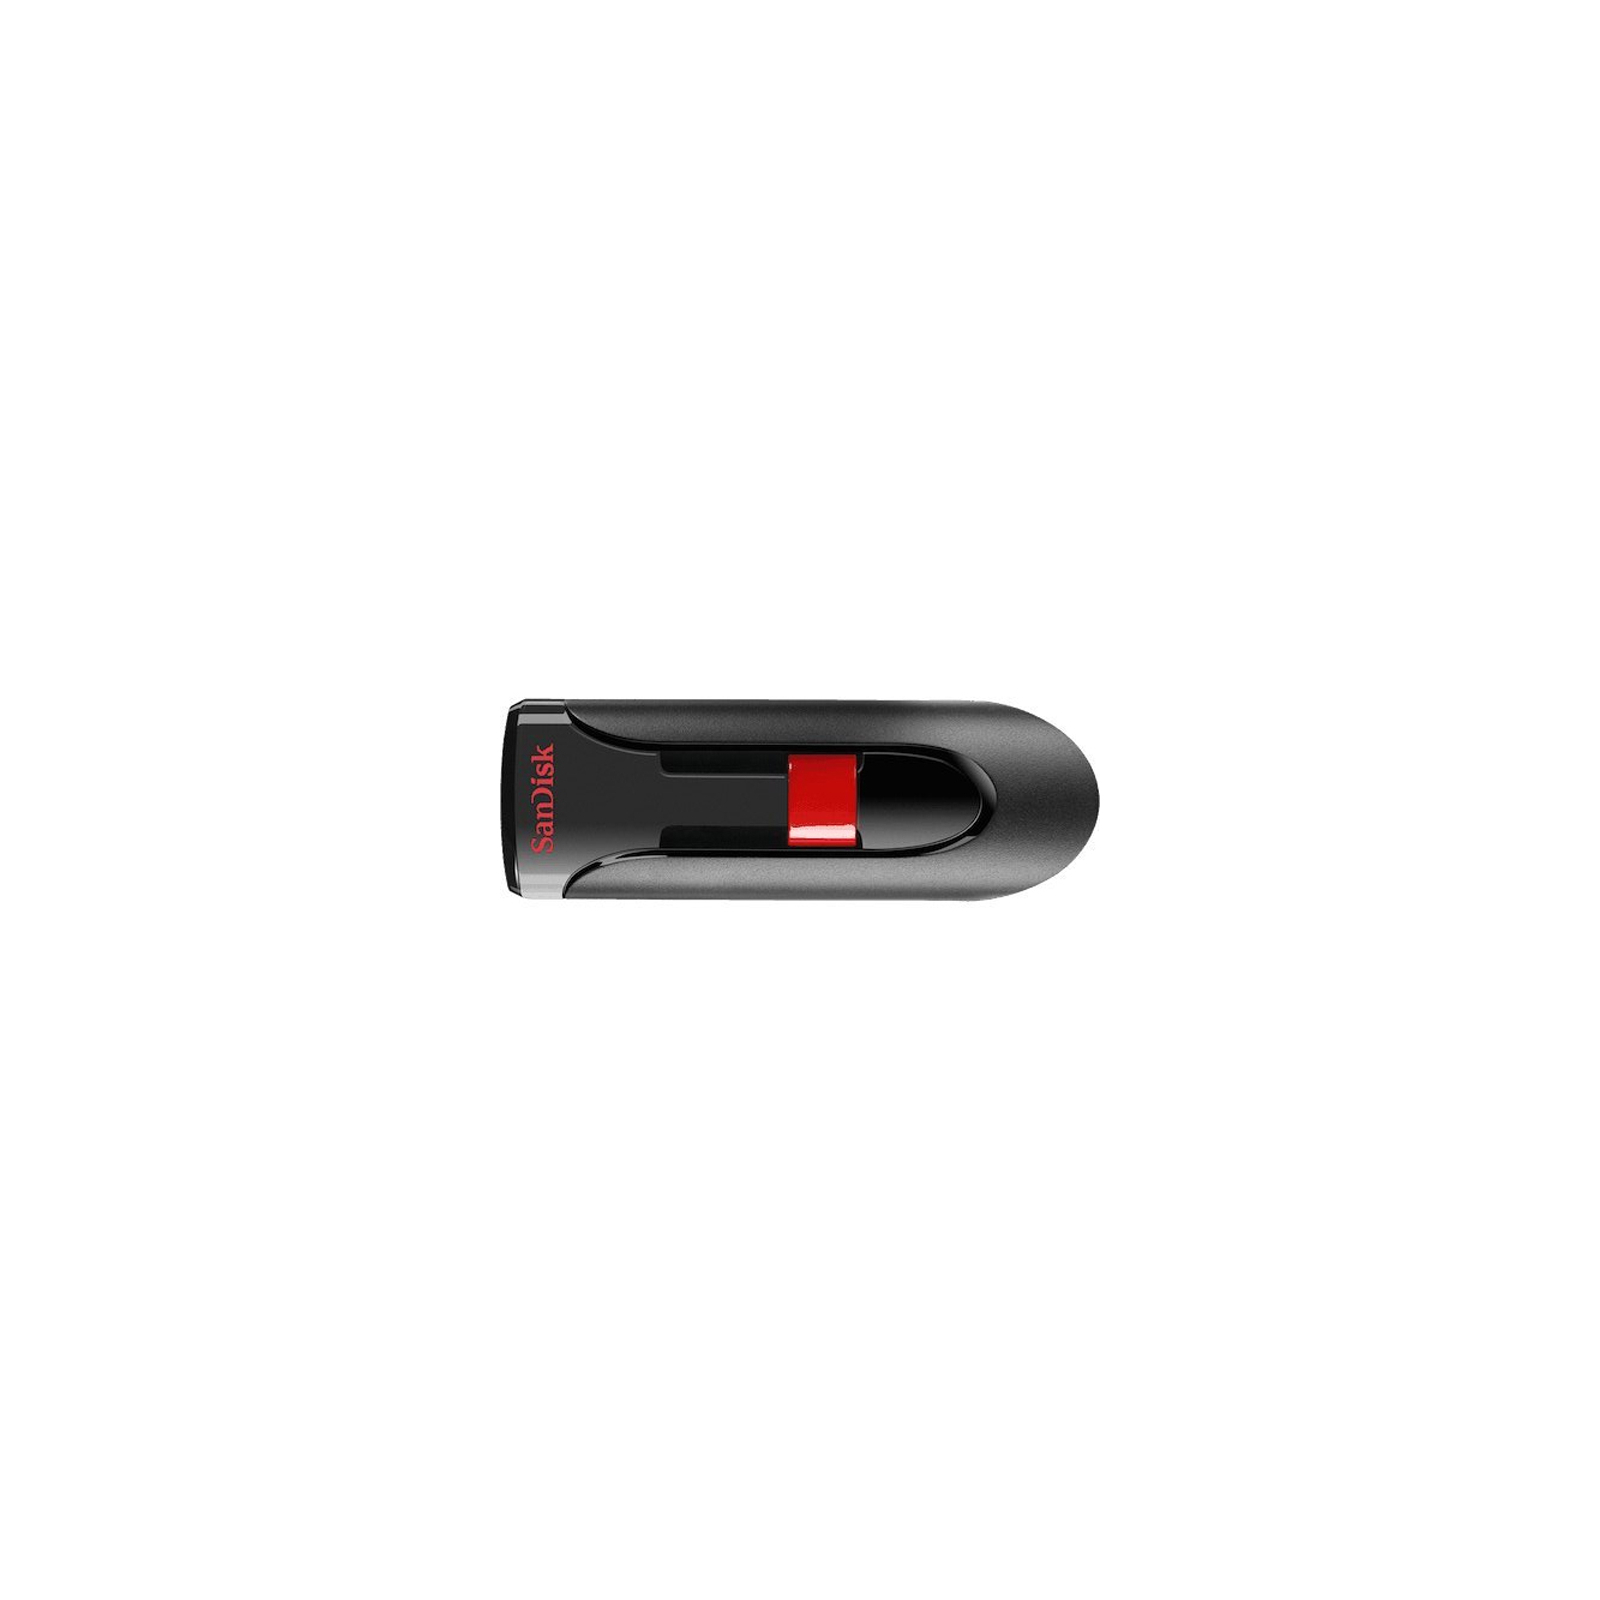 USB флеш накопитель SanDisk 128GB Cruzer Glide Black USB 3.0 (SDCZ600-128G-G35)